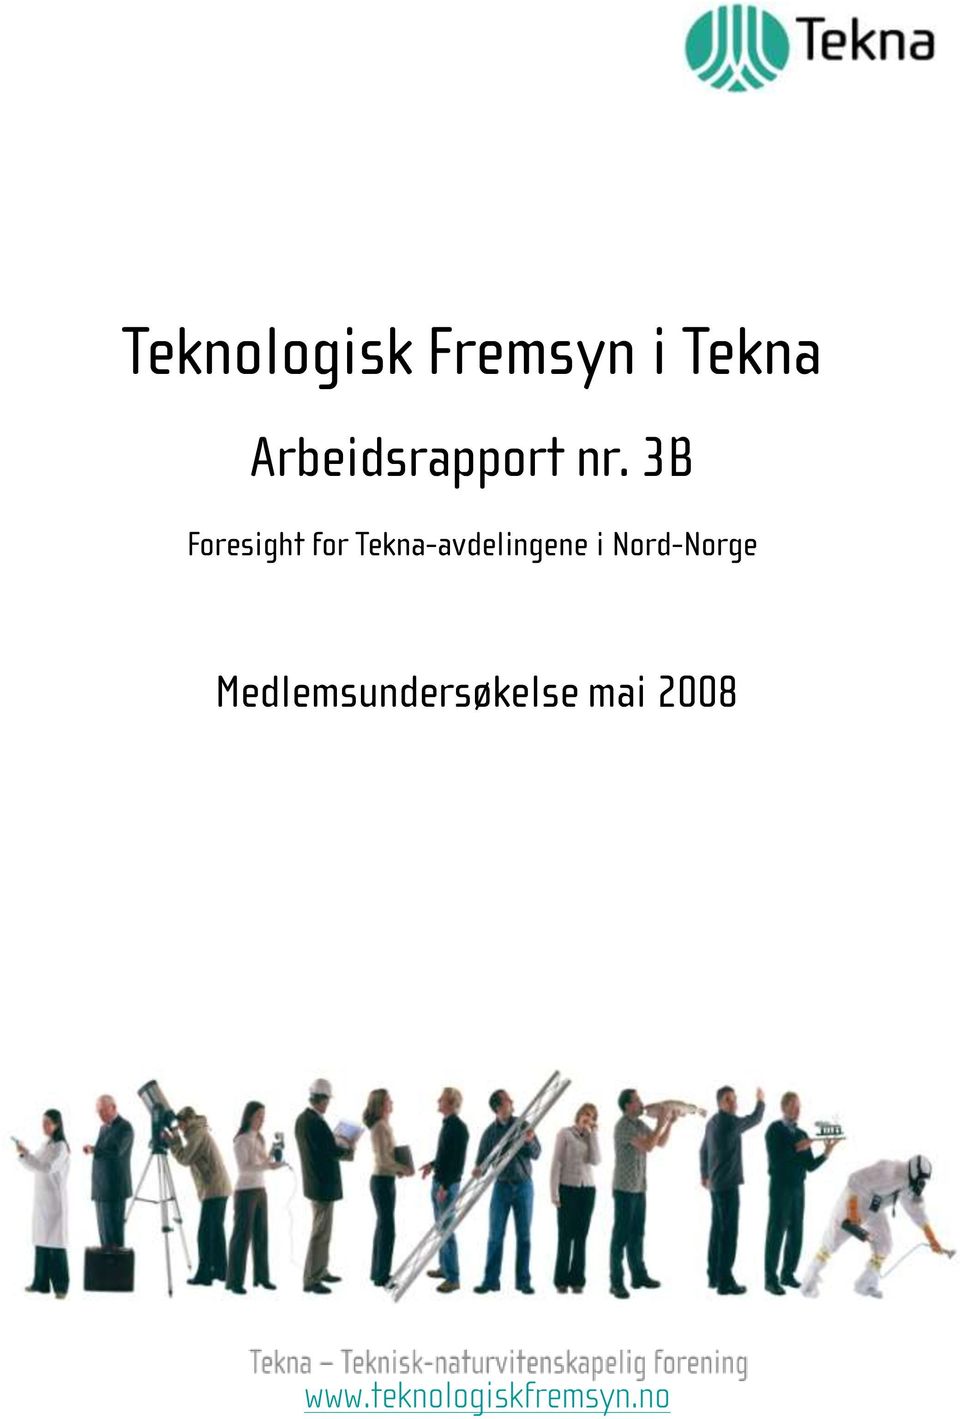 3B Foresight for Tekna-avdelingene i